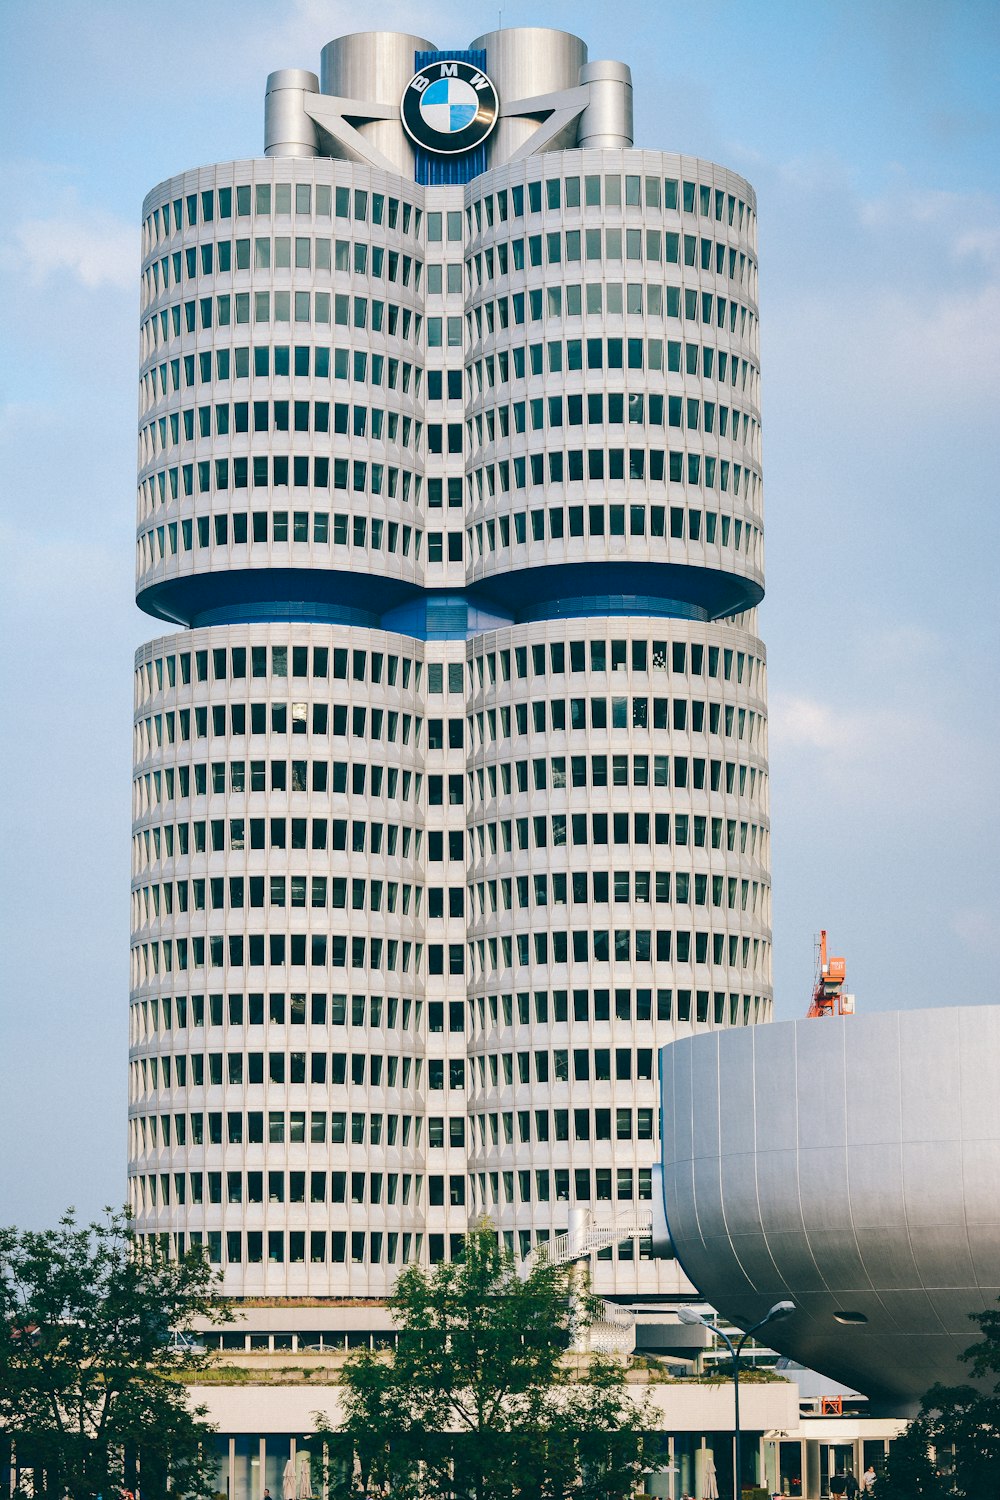 BMW high-rise building taken during daytime